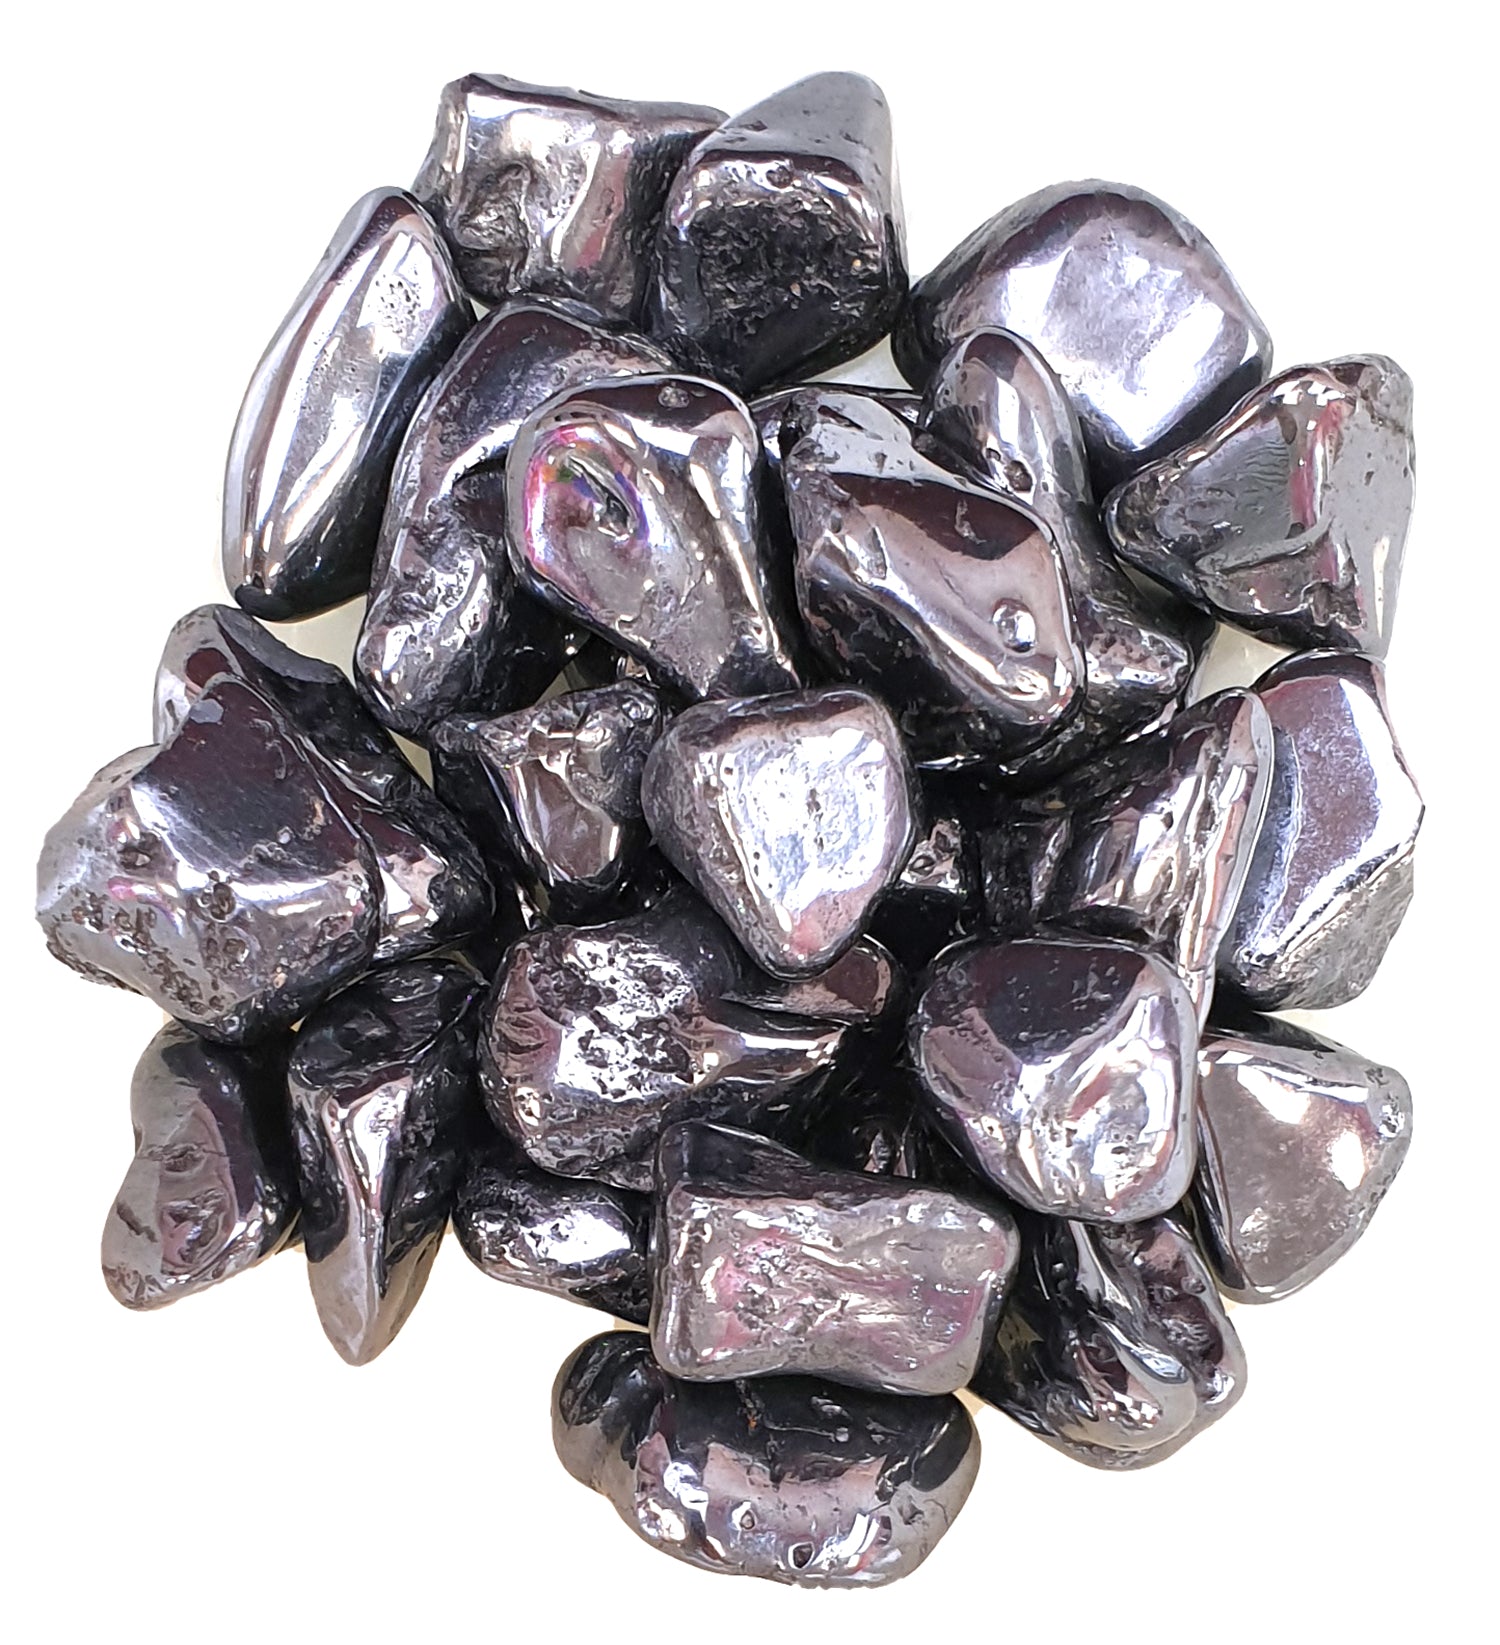 Manganese Polished Healing Crystal Tumble Stone